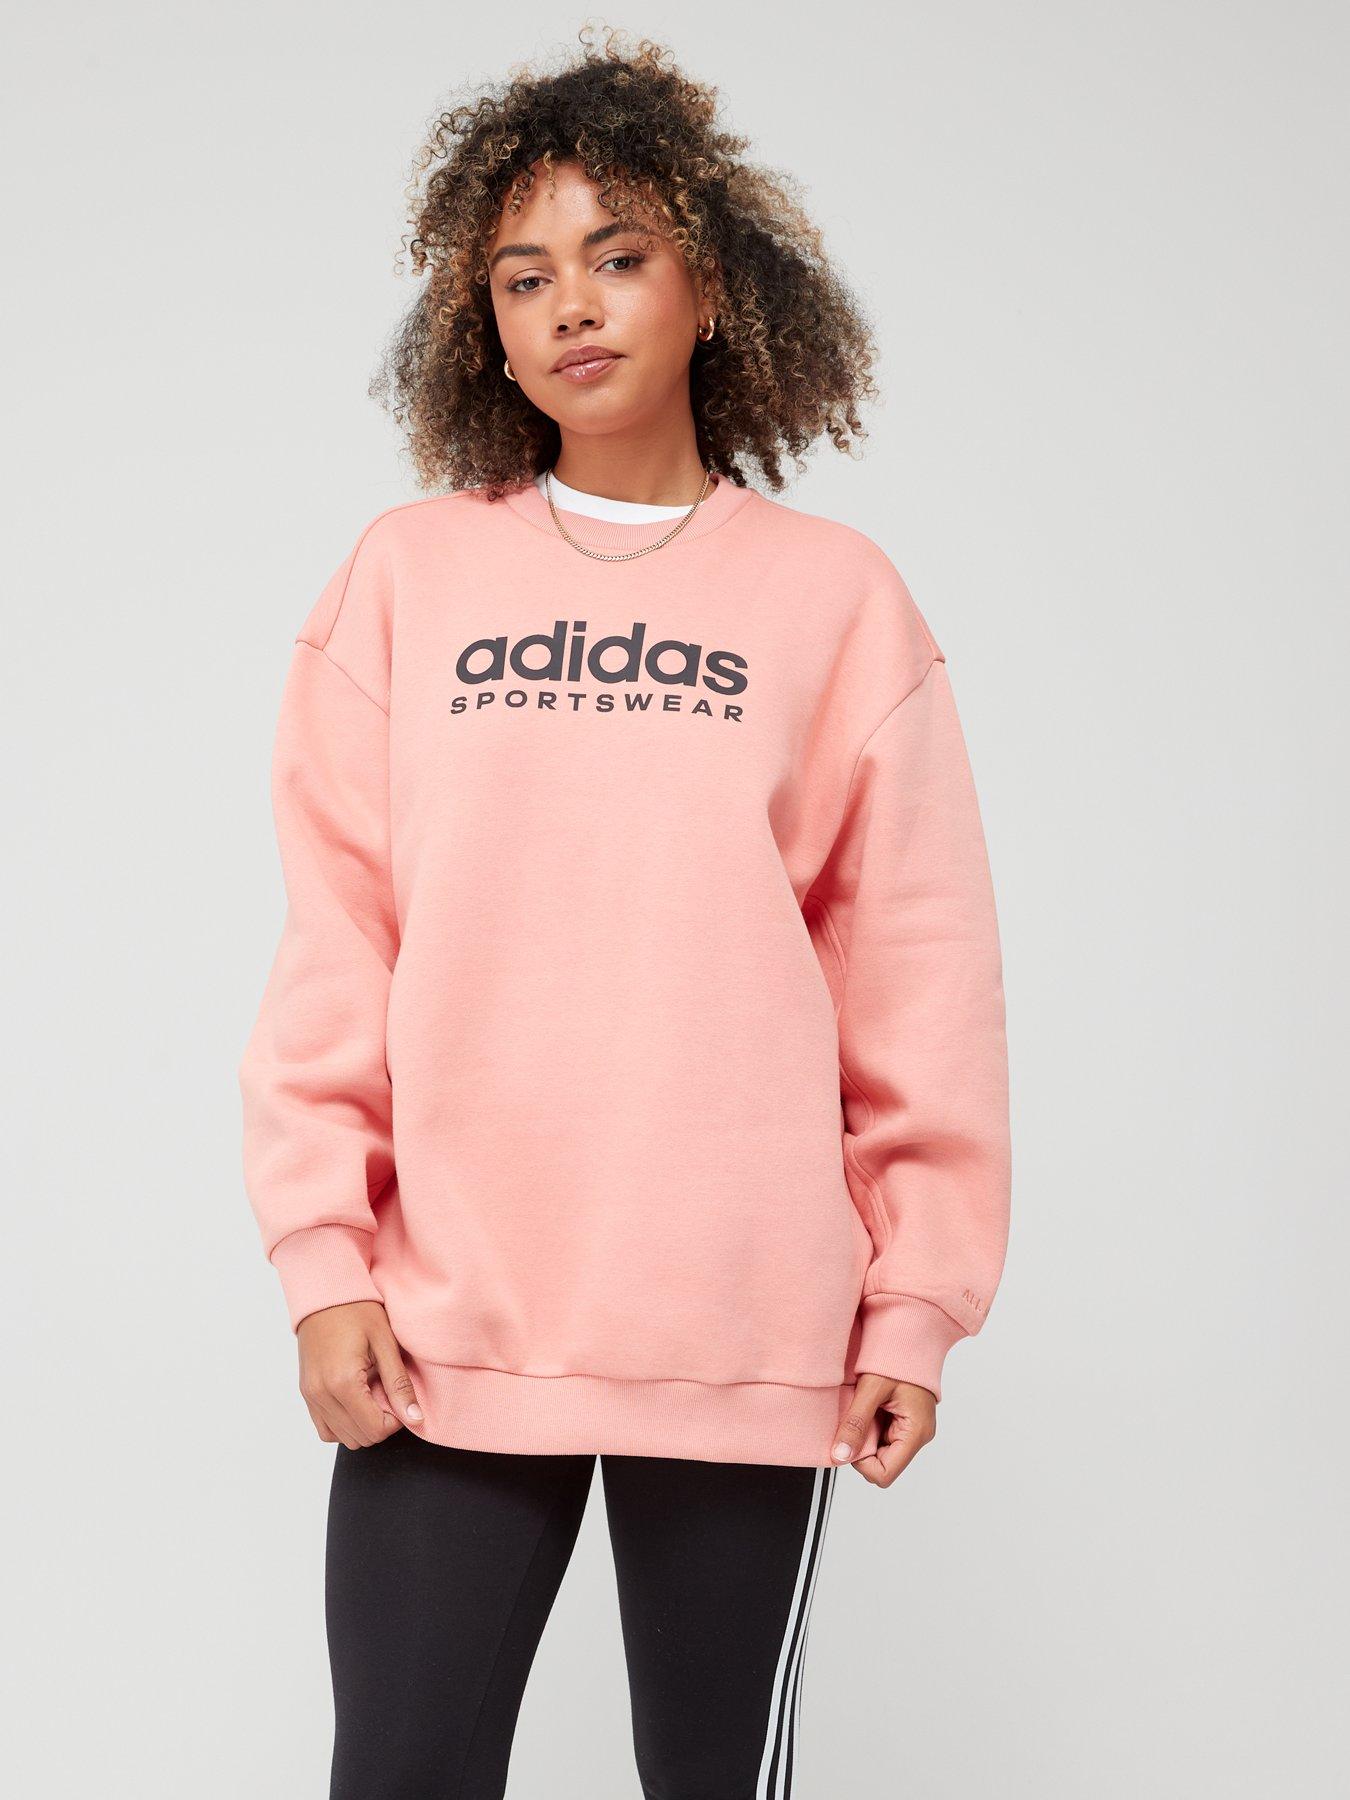 adidas Sportswear All Szn Fleece Graphic Sweatshirt - Beige, Pink, Size M, Women